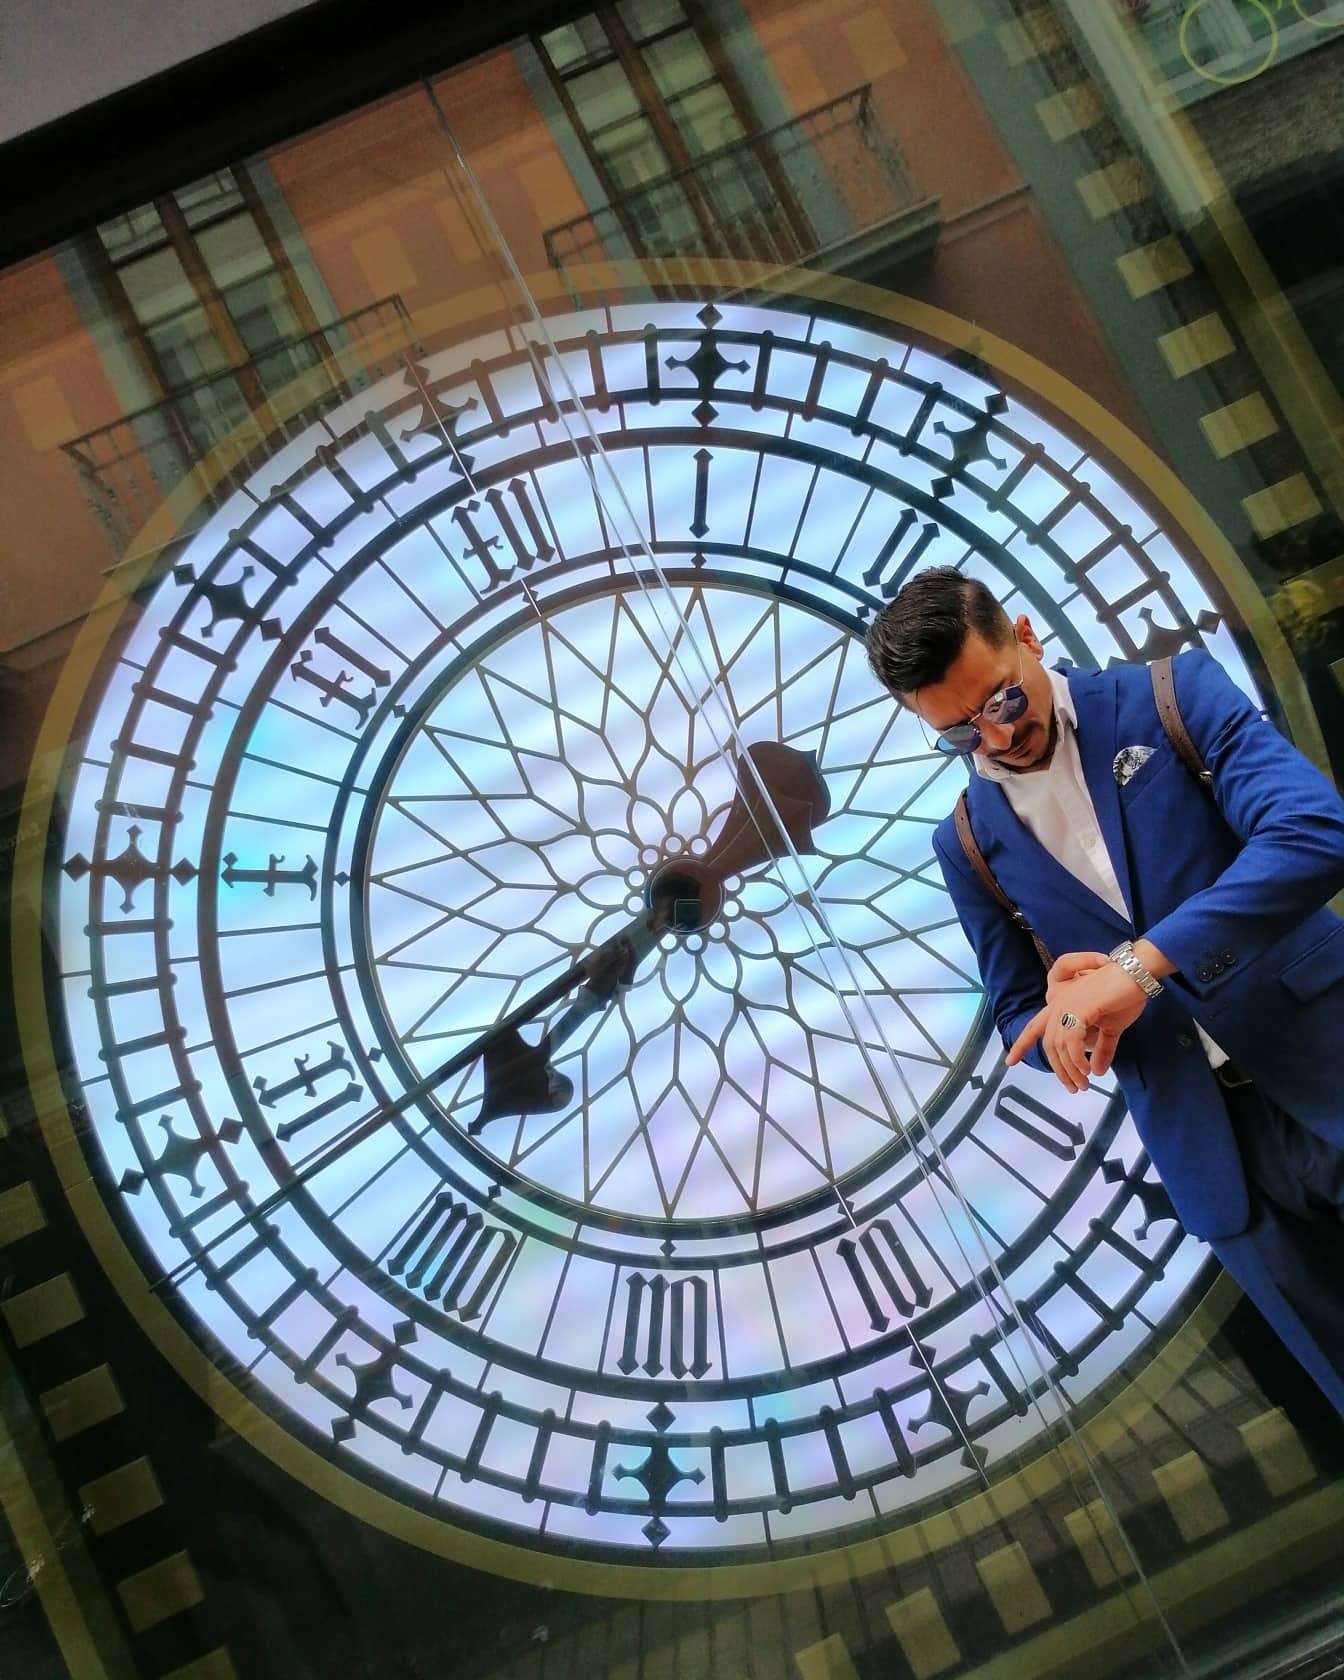 Forretningsmann i dress som ser på armbåndsur med refleksjon av stor klokke på vindu i bakgrunnen